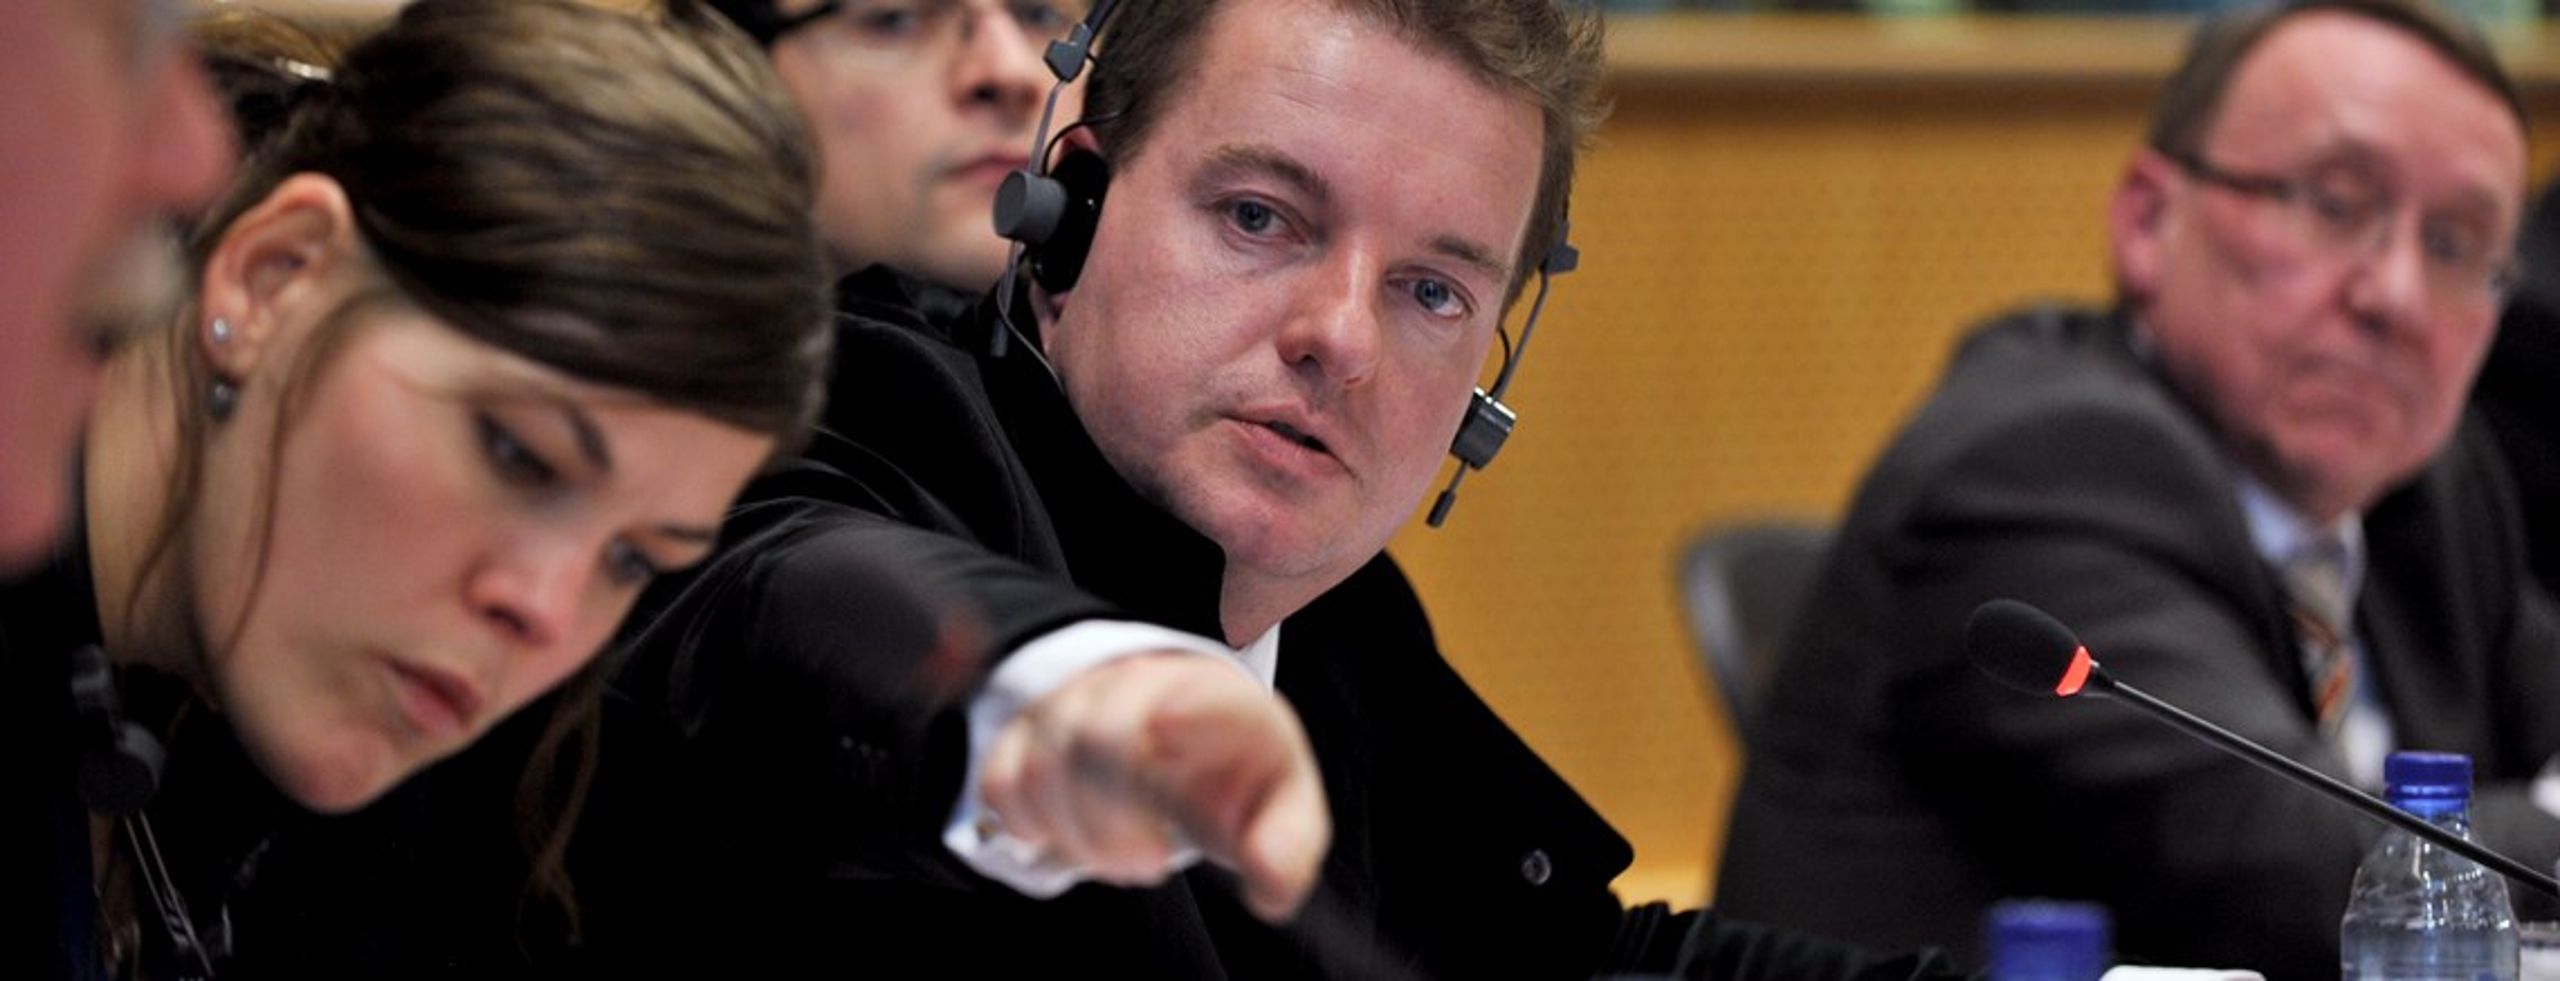 Jens Rohde er medlem af Europa-Parlamentet i den liberale gruppe, ALDE. Han skiftede parti fra Venstre til Radikale i december 2015.